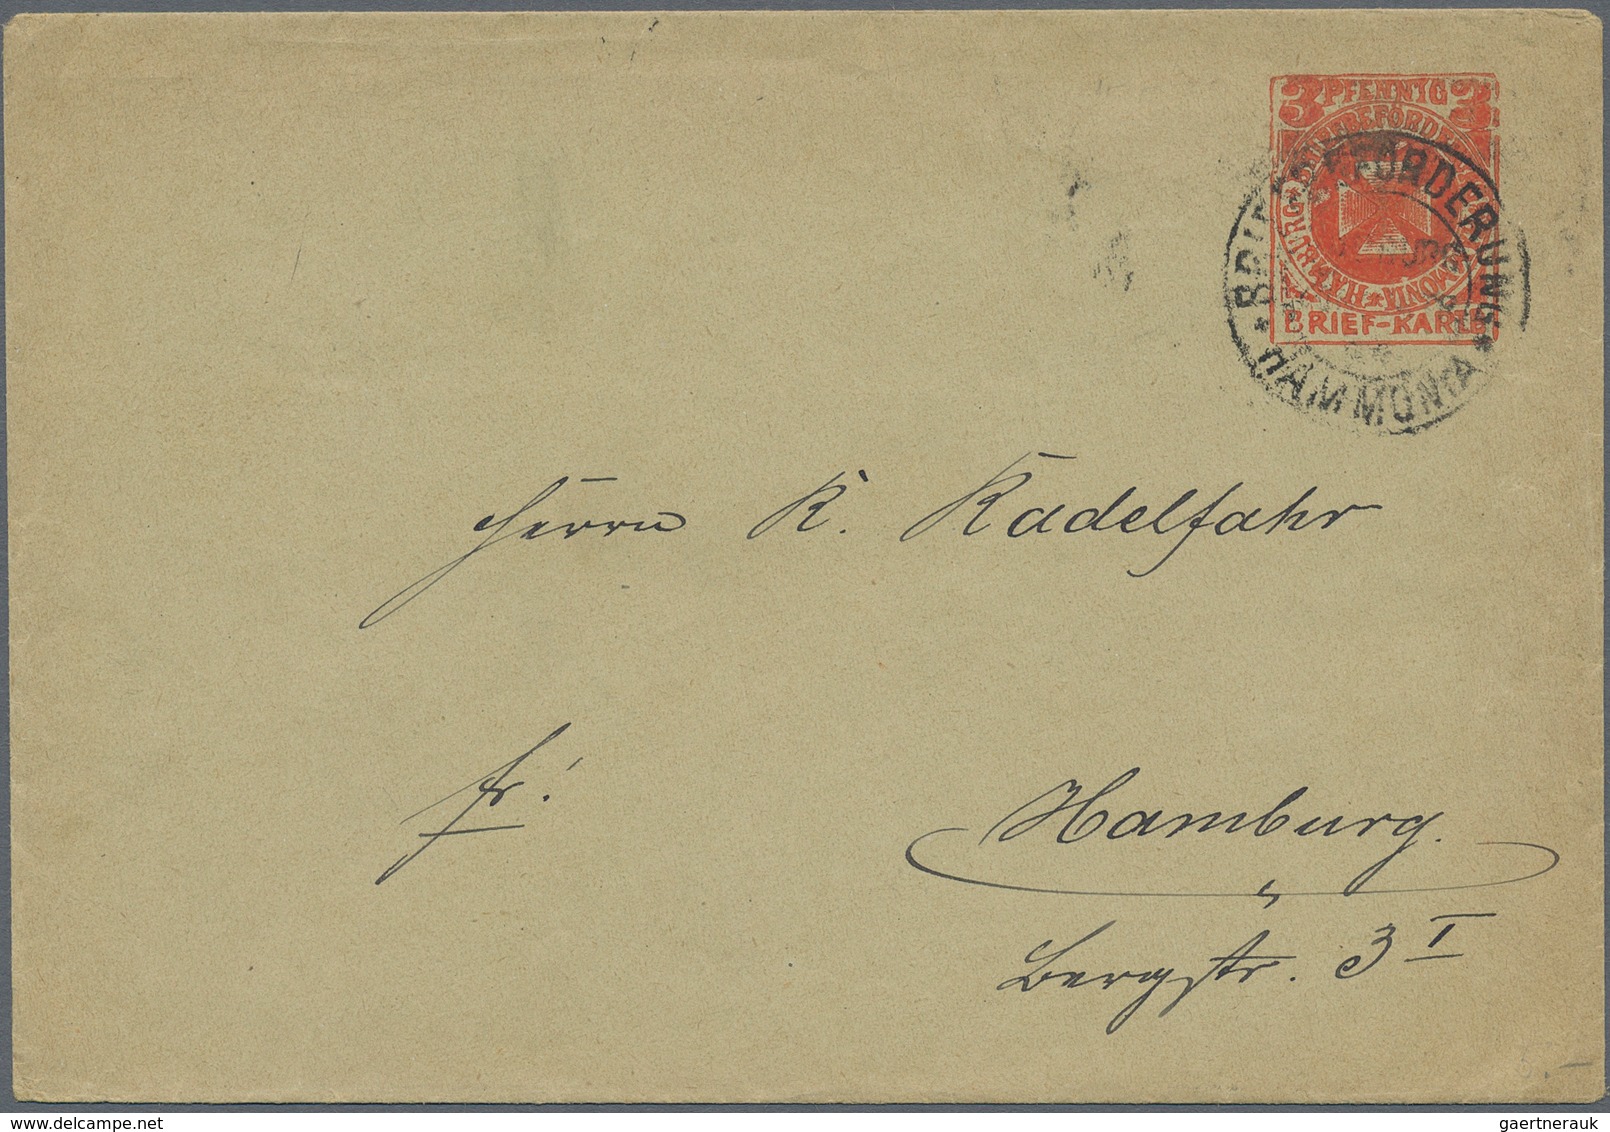 Deutsches Reich - Privatpost (Stadtpost): HAMBURG: Brief-u. Paketbeförderung H. Maack bis Orts-Paket